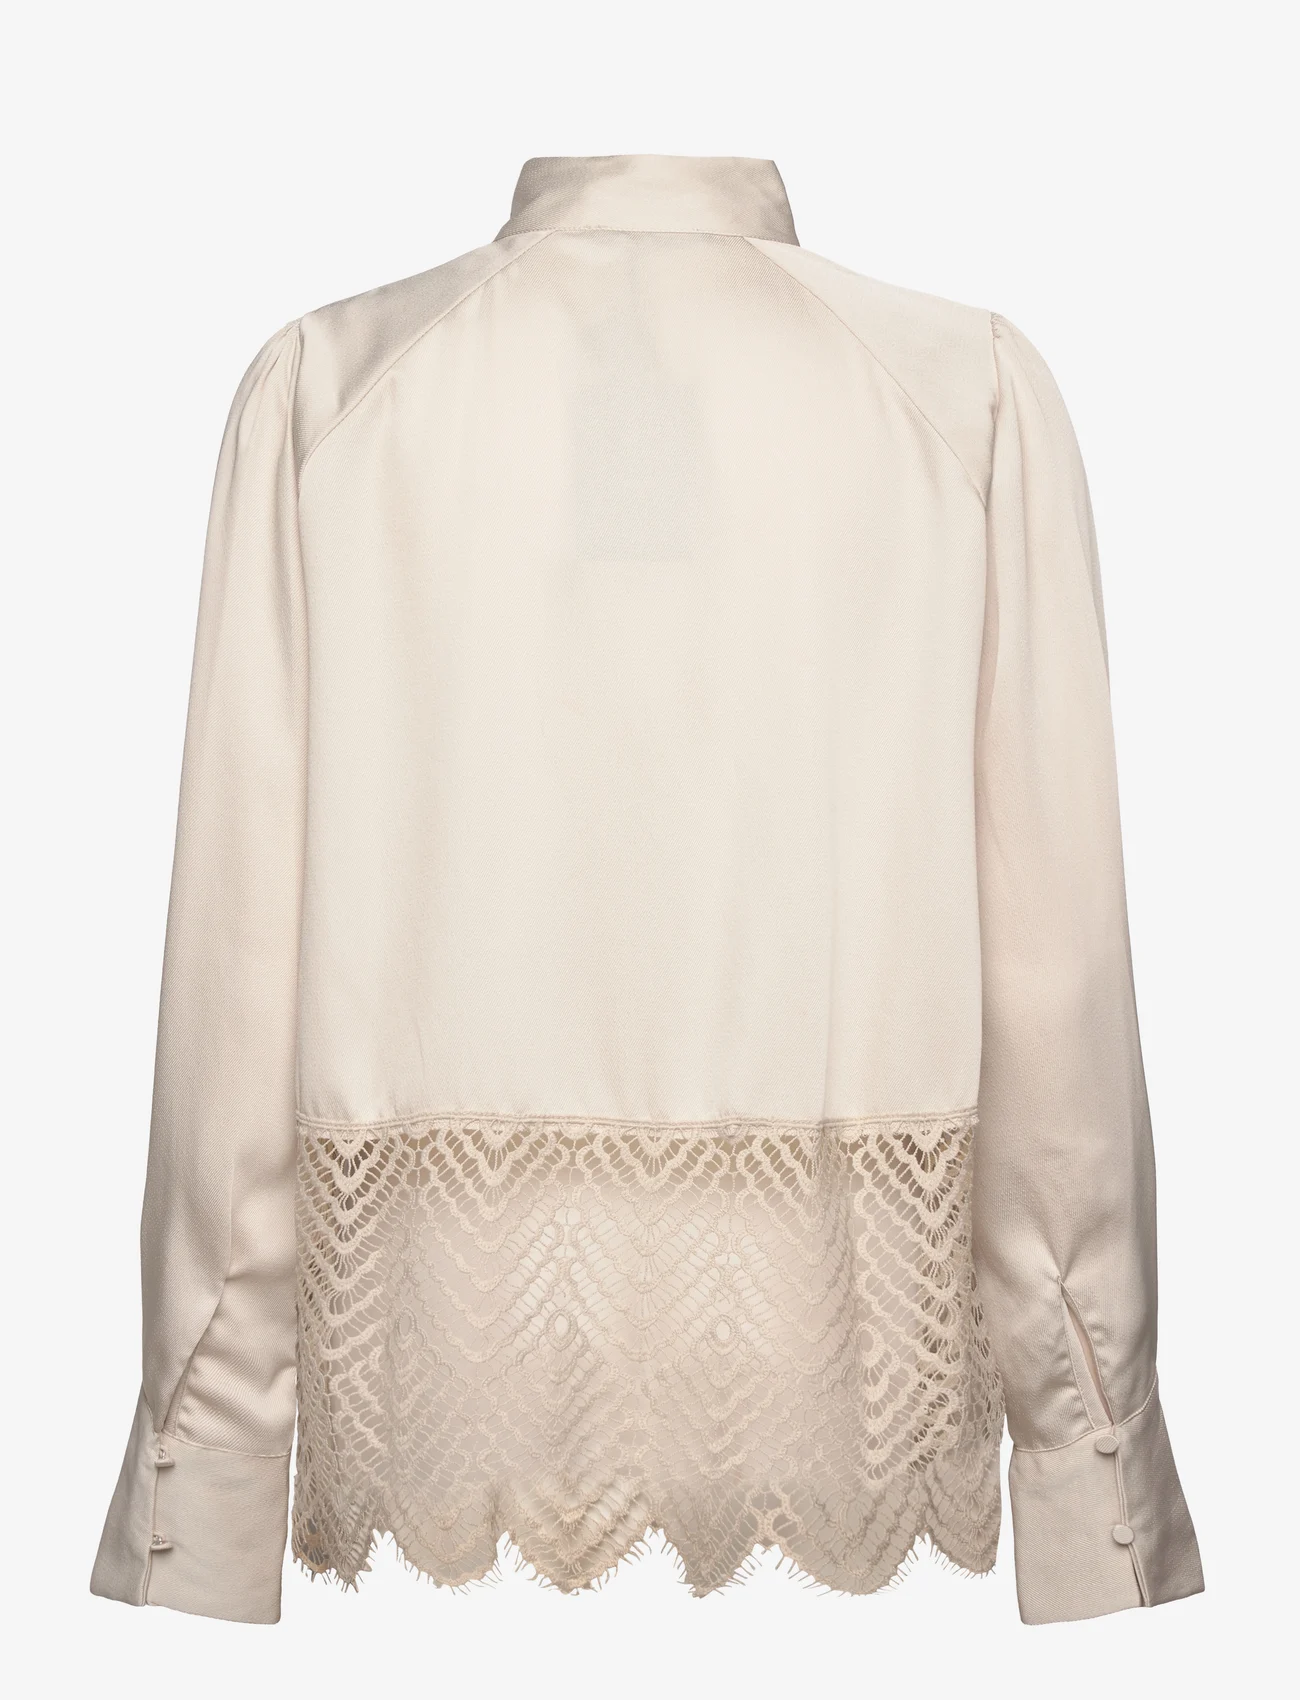 Bruuns Bazaar - CedarsBBChatrina blouse - long-sleeved blouses - kit - 1